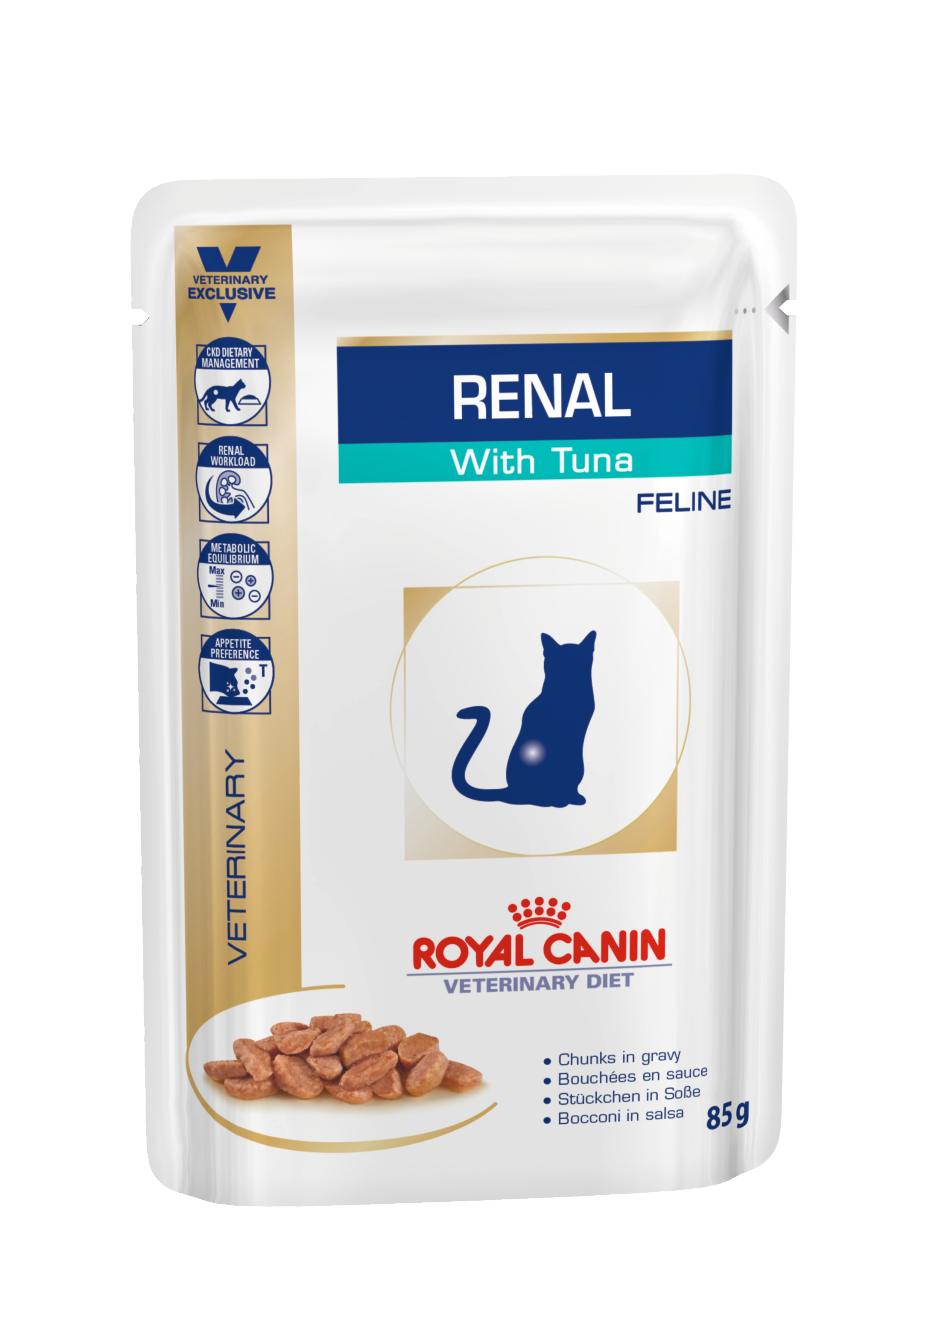 Renal with Tuna CIG Basah - Royal Canin